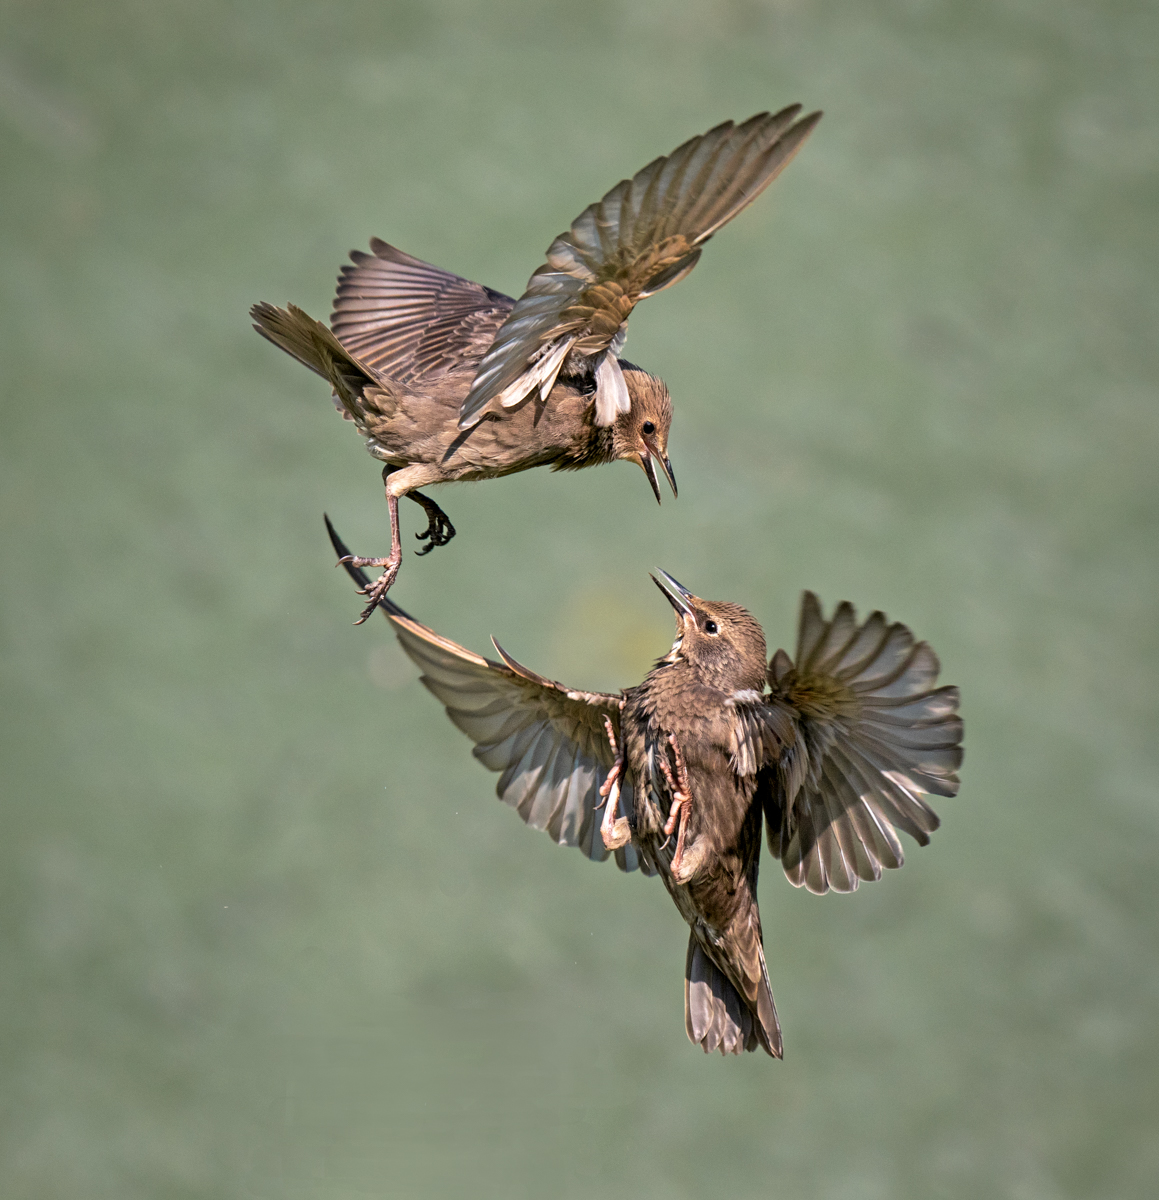 Squabbling Juvenile Starlings